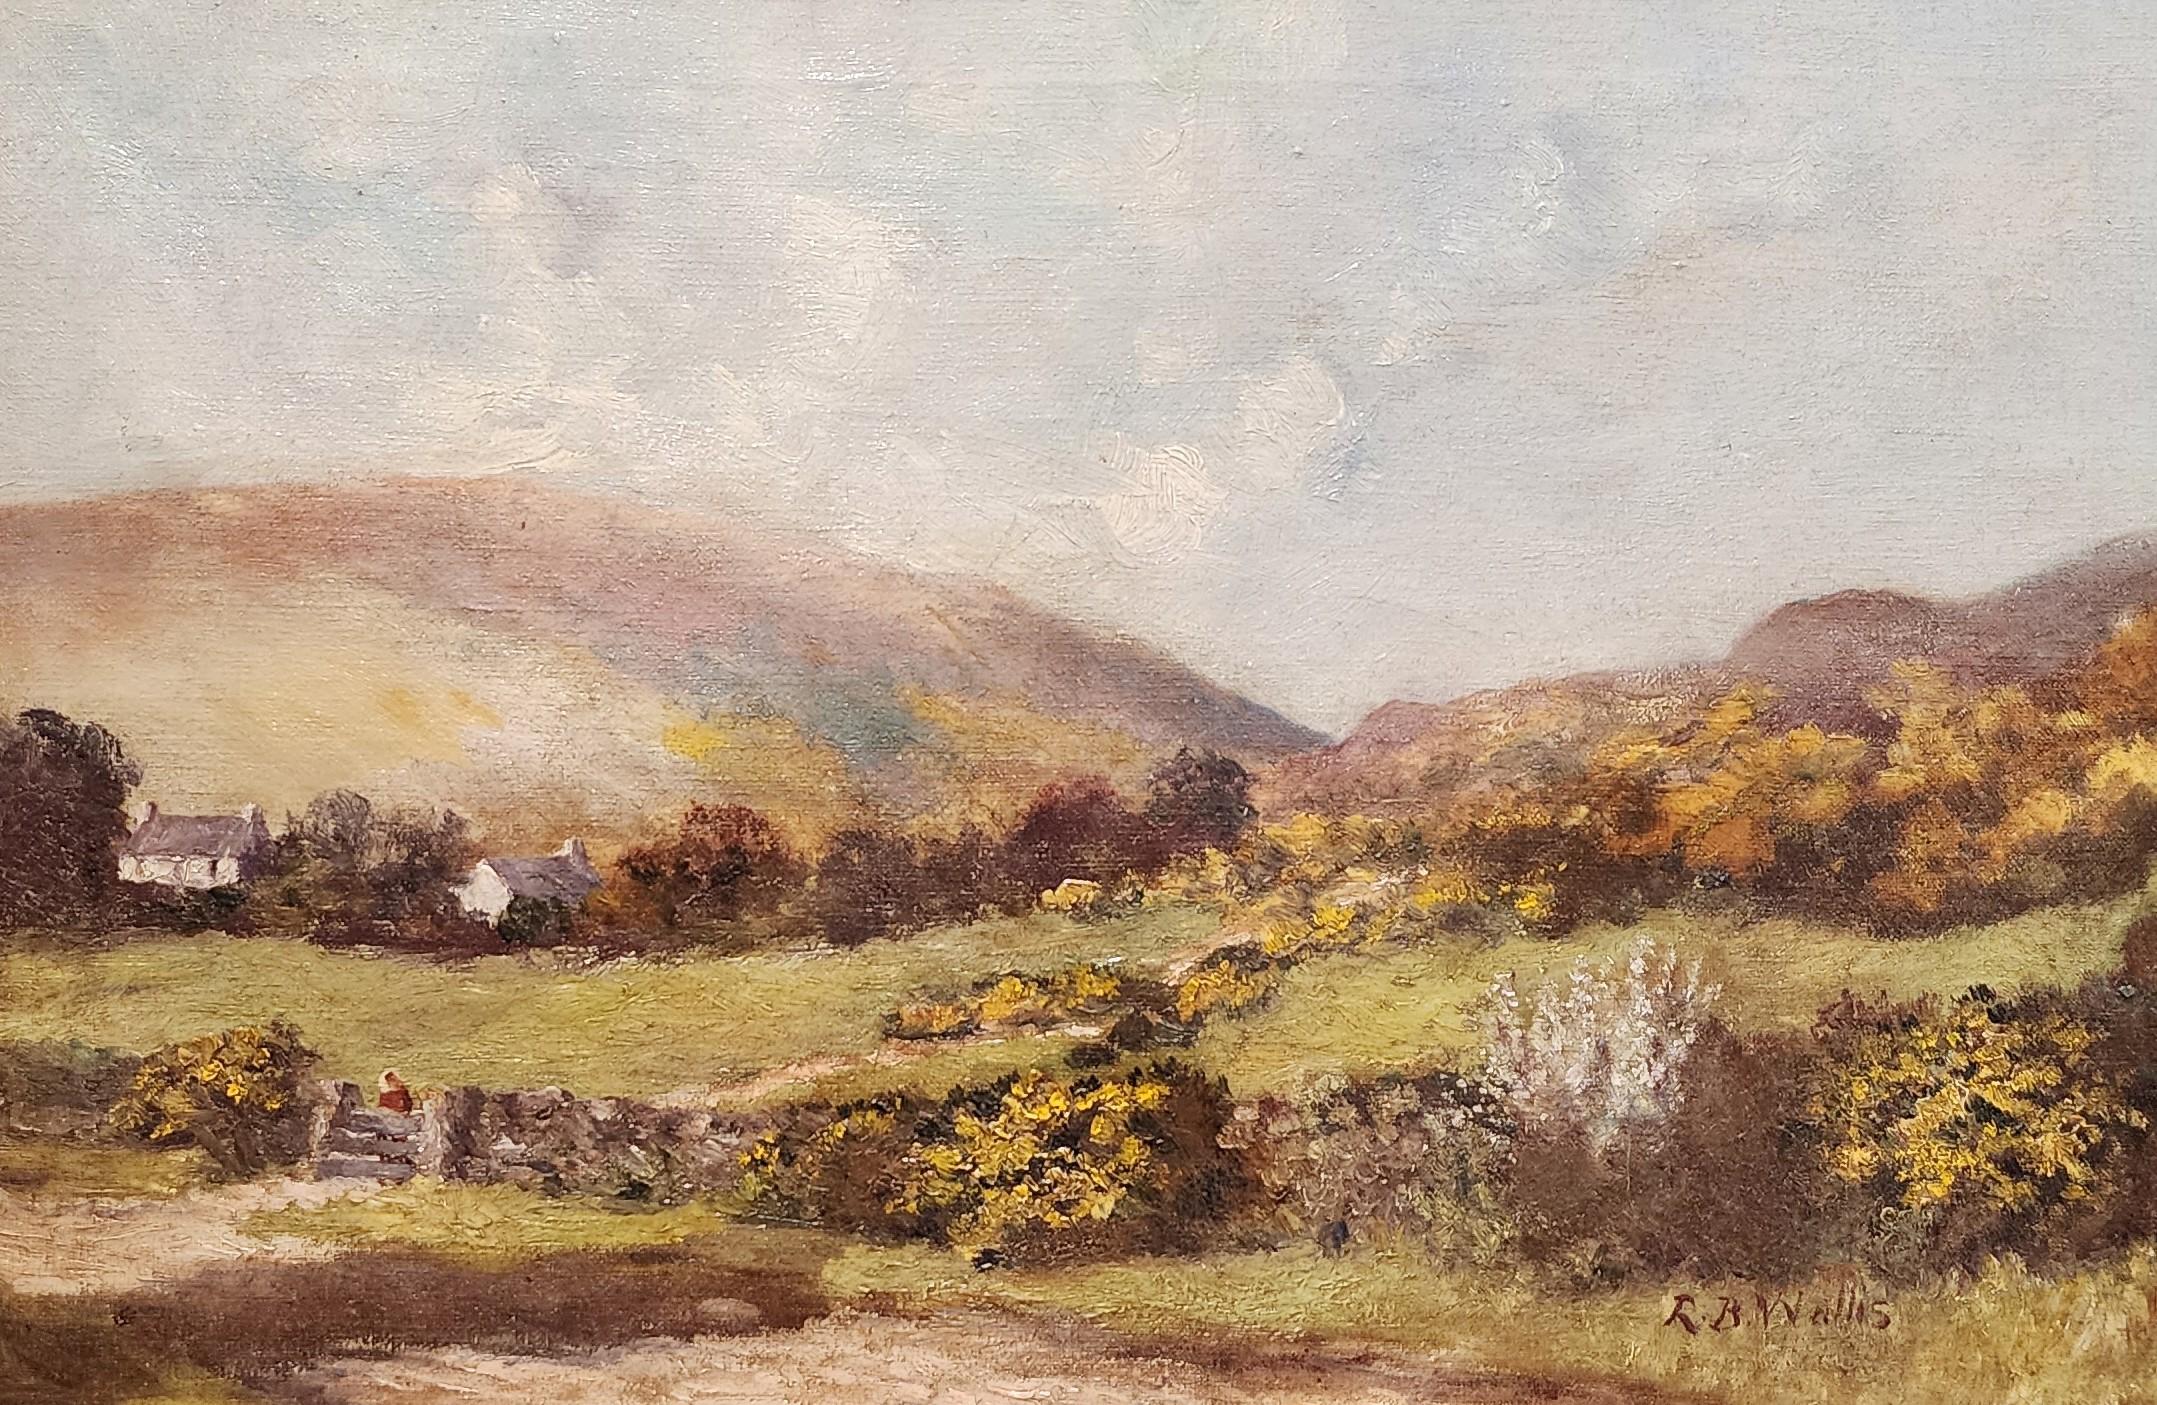 In West Cornwall, englische Country Side des 19. Jahrhunderts, England – Painting von Robert Bruce Wallis